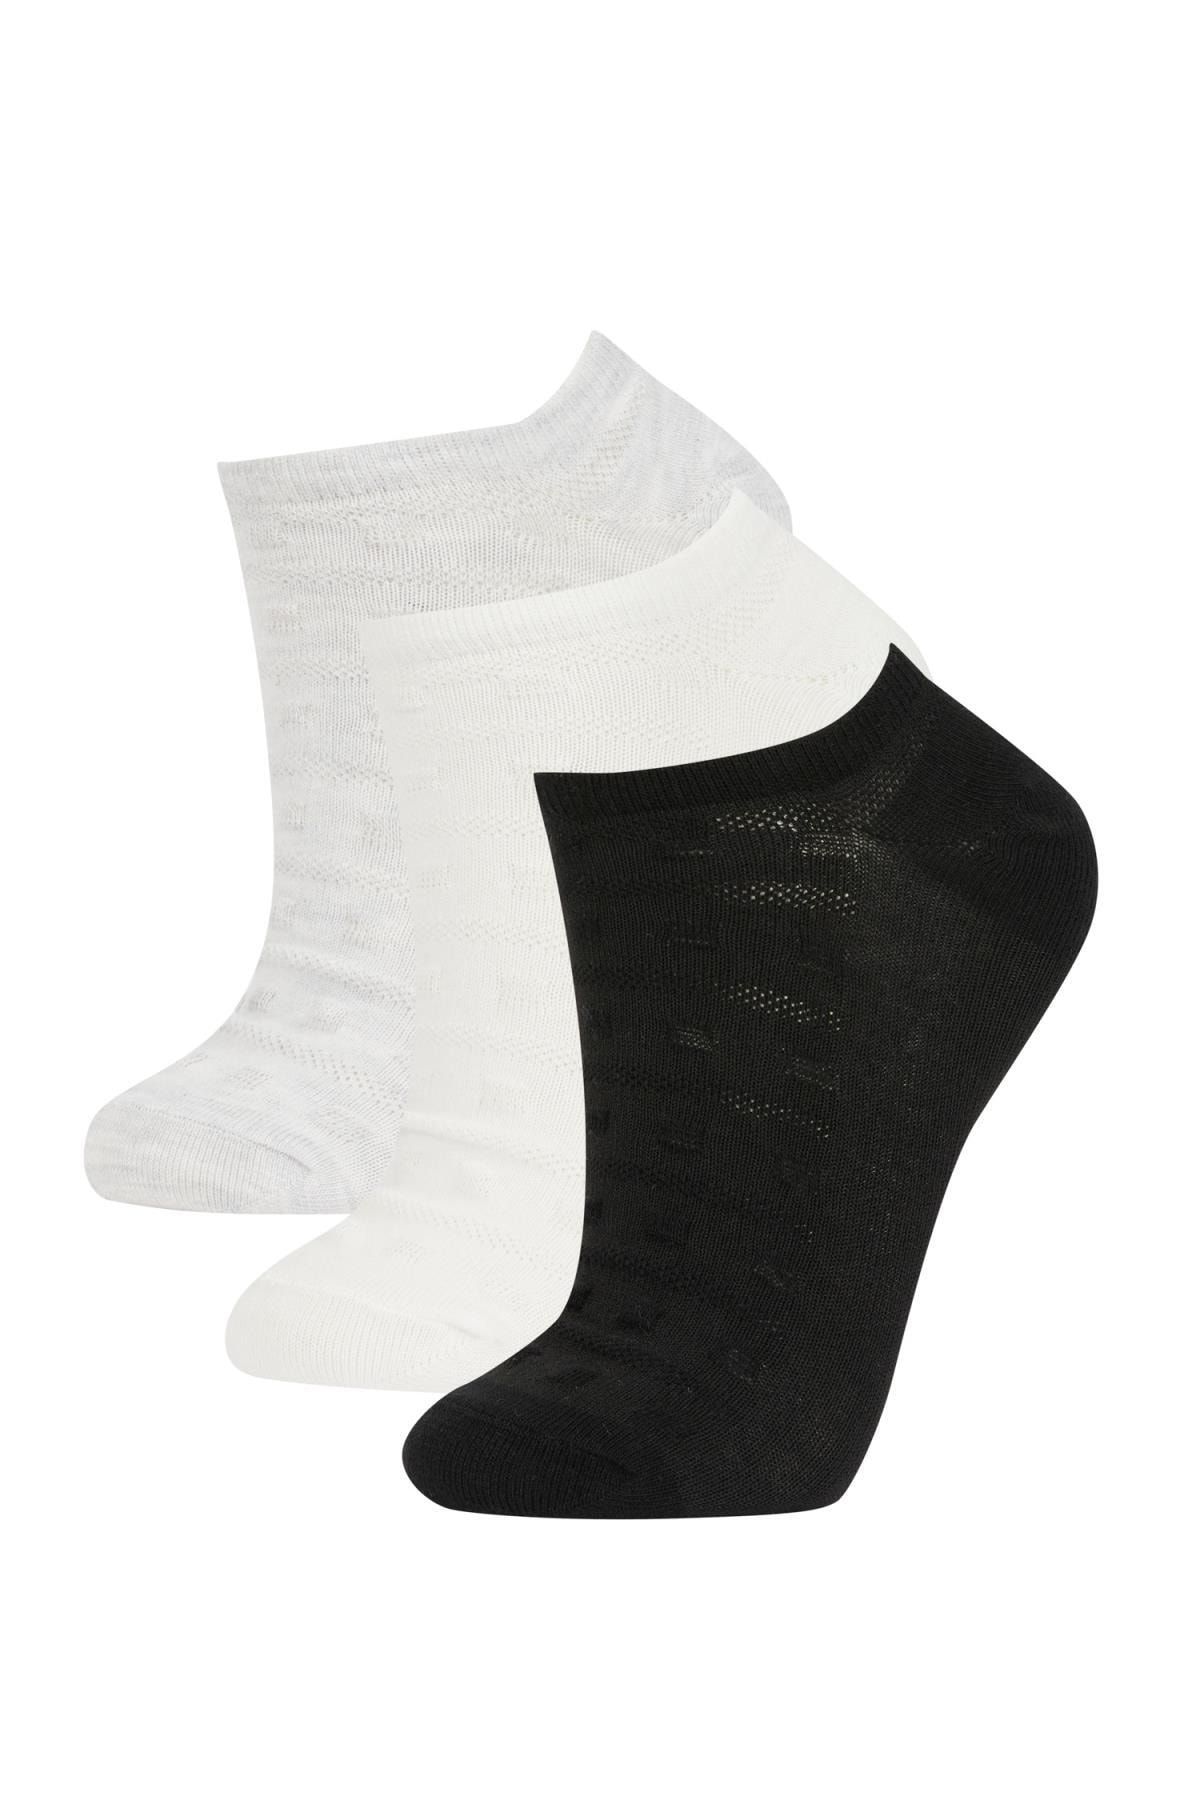 Defacto Kadın 3lü Pamuklu Sneaker Çorap Z7570azns